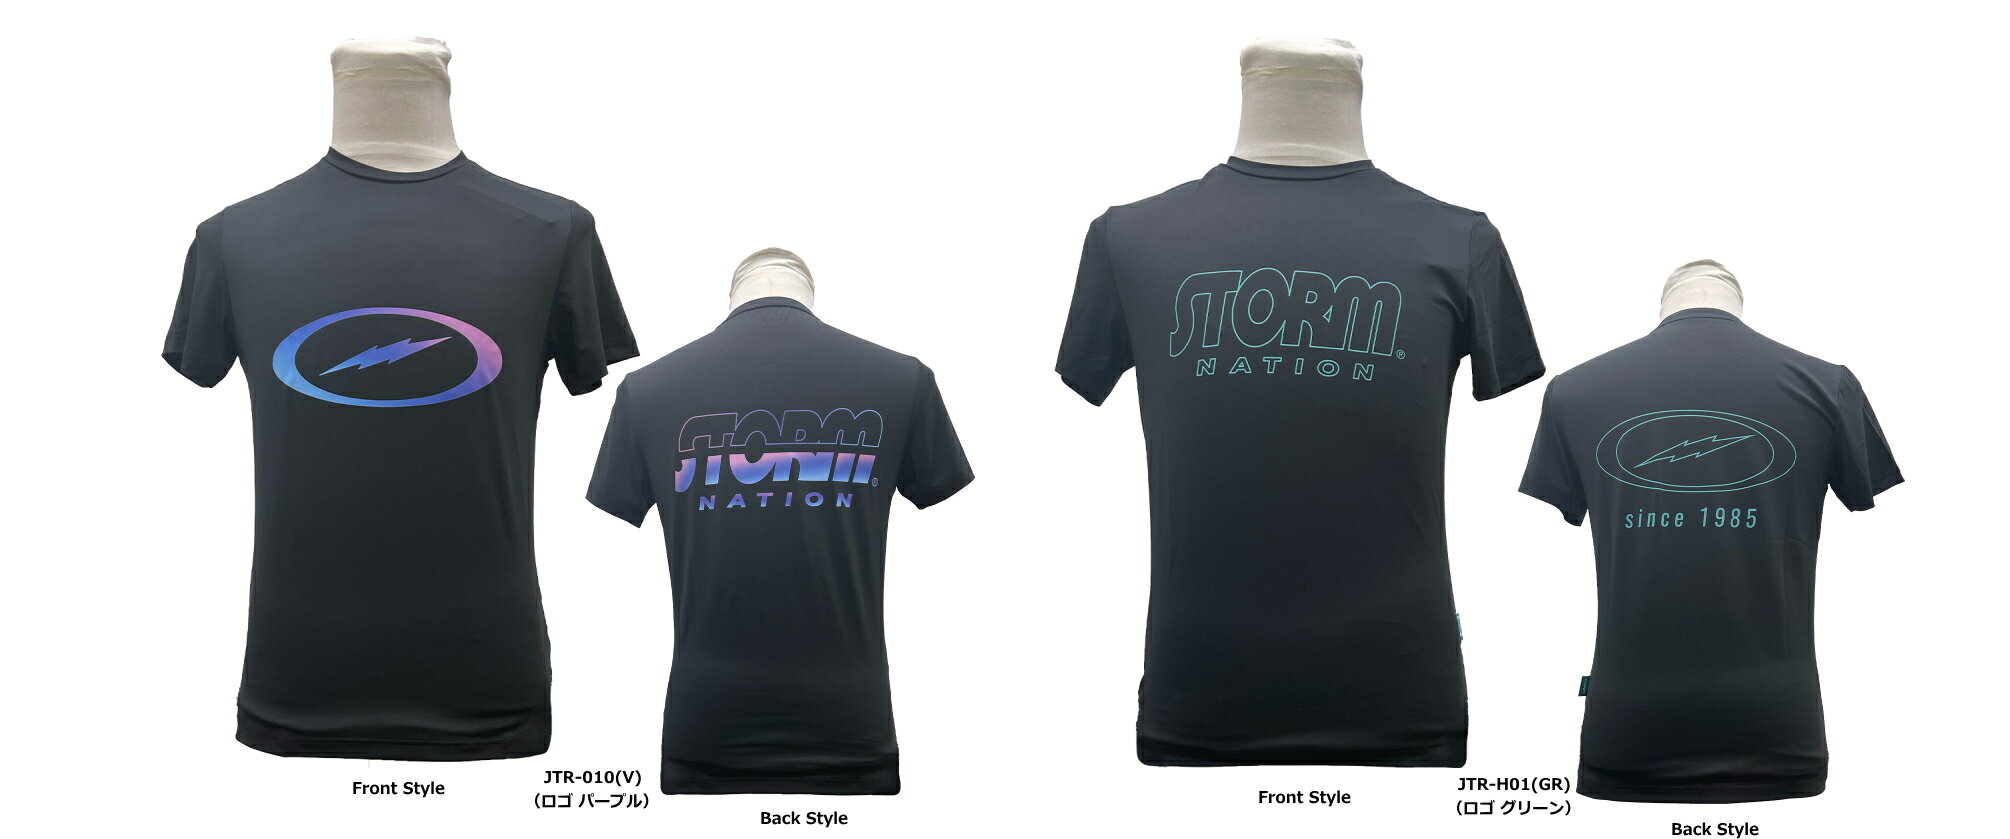 ストーム　STネイション・Tシャツ （半袖Tシャツ） 品番、ロゴカラー： JTR-010（ロゴ パープル）画像左 JTR-H01（ロゴ グリーン）画像右 サイズ：XS、S、M、L、LL、3L、4L 材質：ポリエステル88%、ポリウレタン12% STORM社公認モデル 吸汗・速乾に優れ、しわになりにくく、着心地抜群な高性能生地を採用。